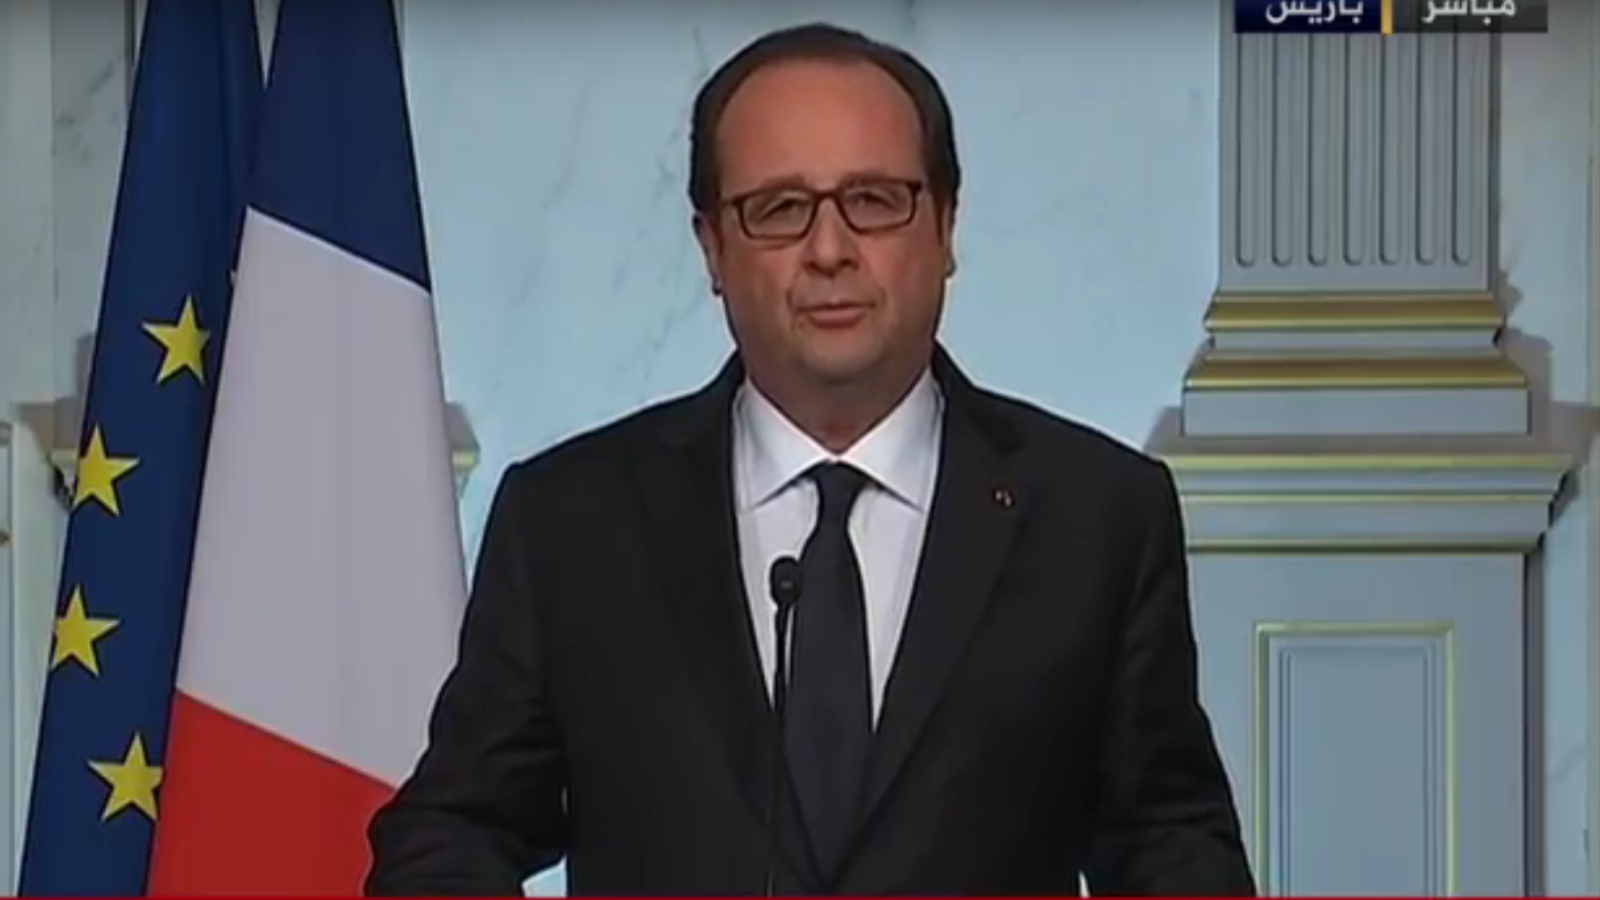 ‪هولاند: فرنسا تقع تحت تهديد الإرهاب الإسلامي‬ (الجزيرة)